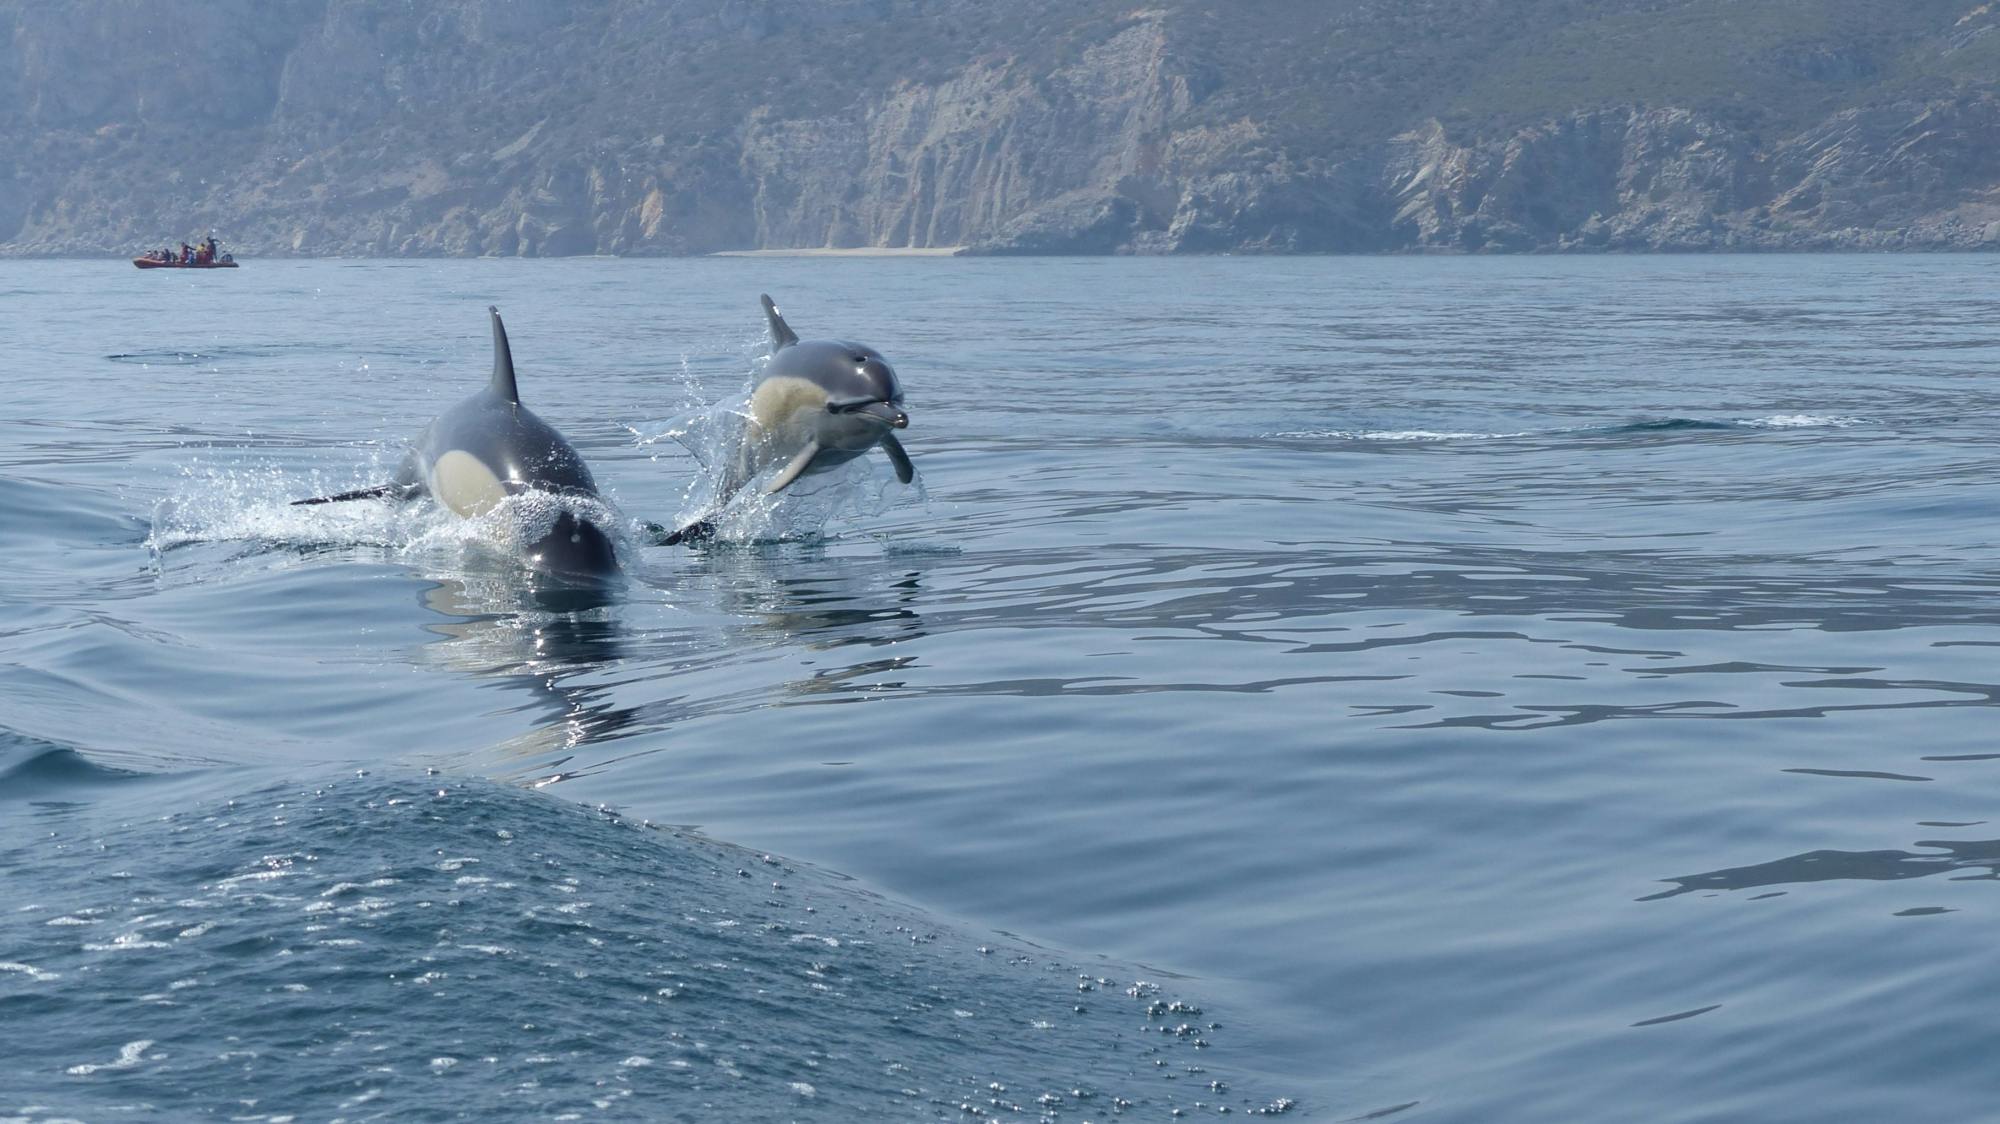 Obserwacja delfinów w Sesimbrze z transferem